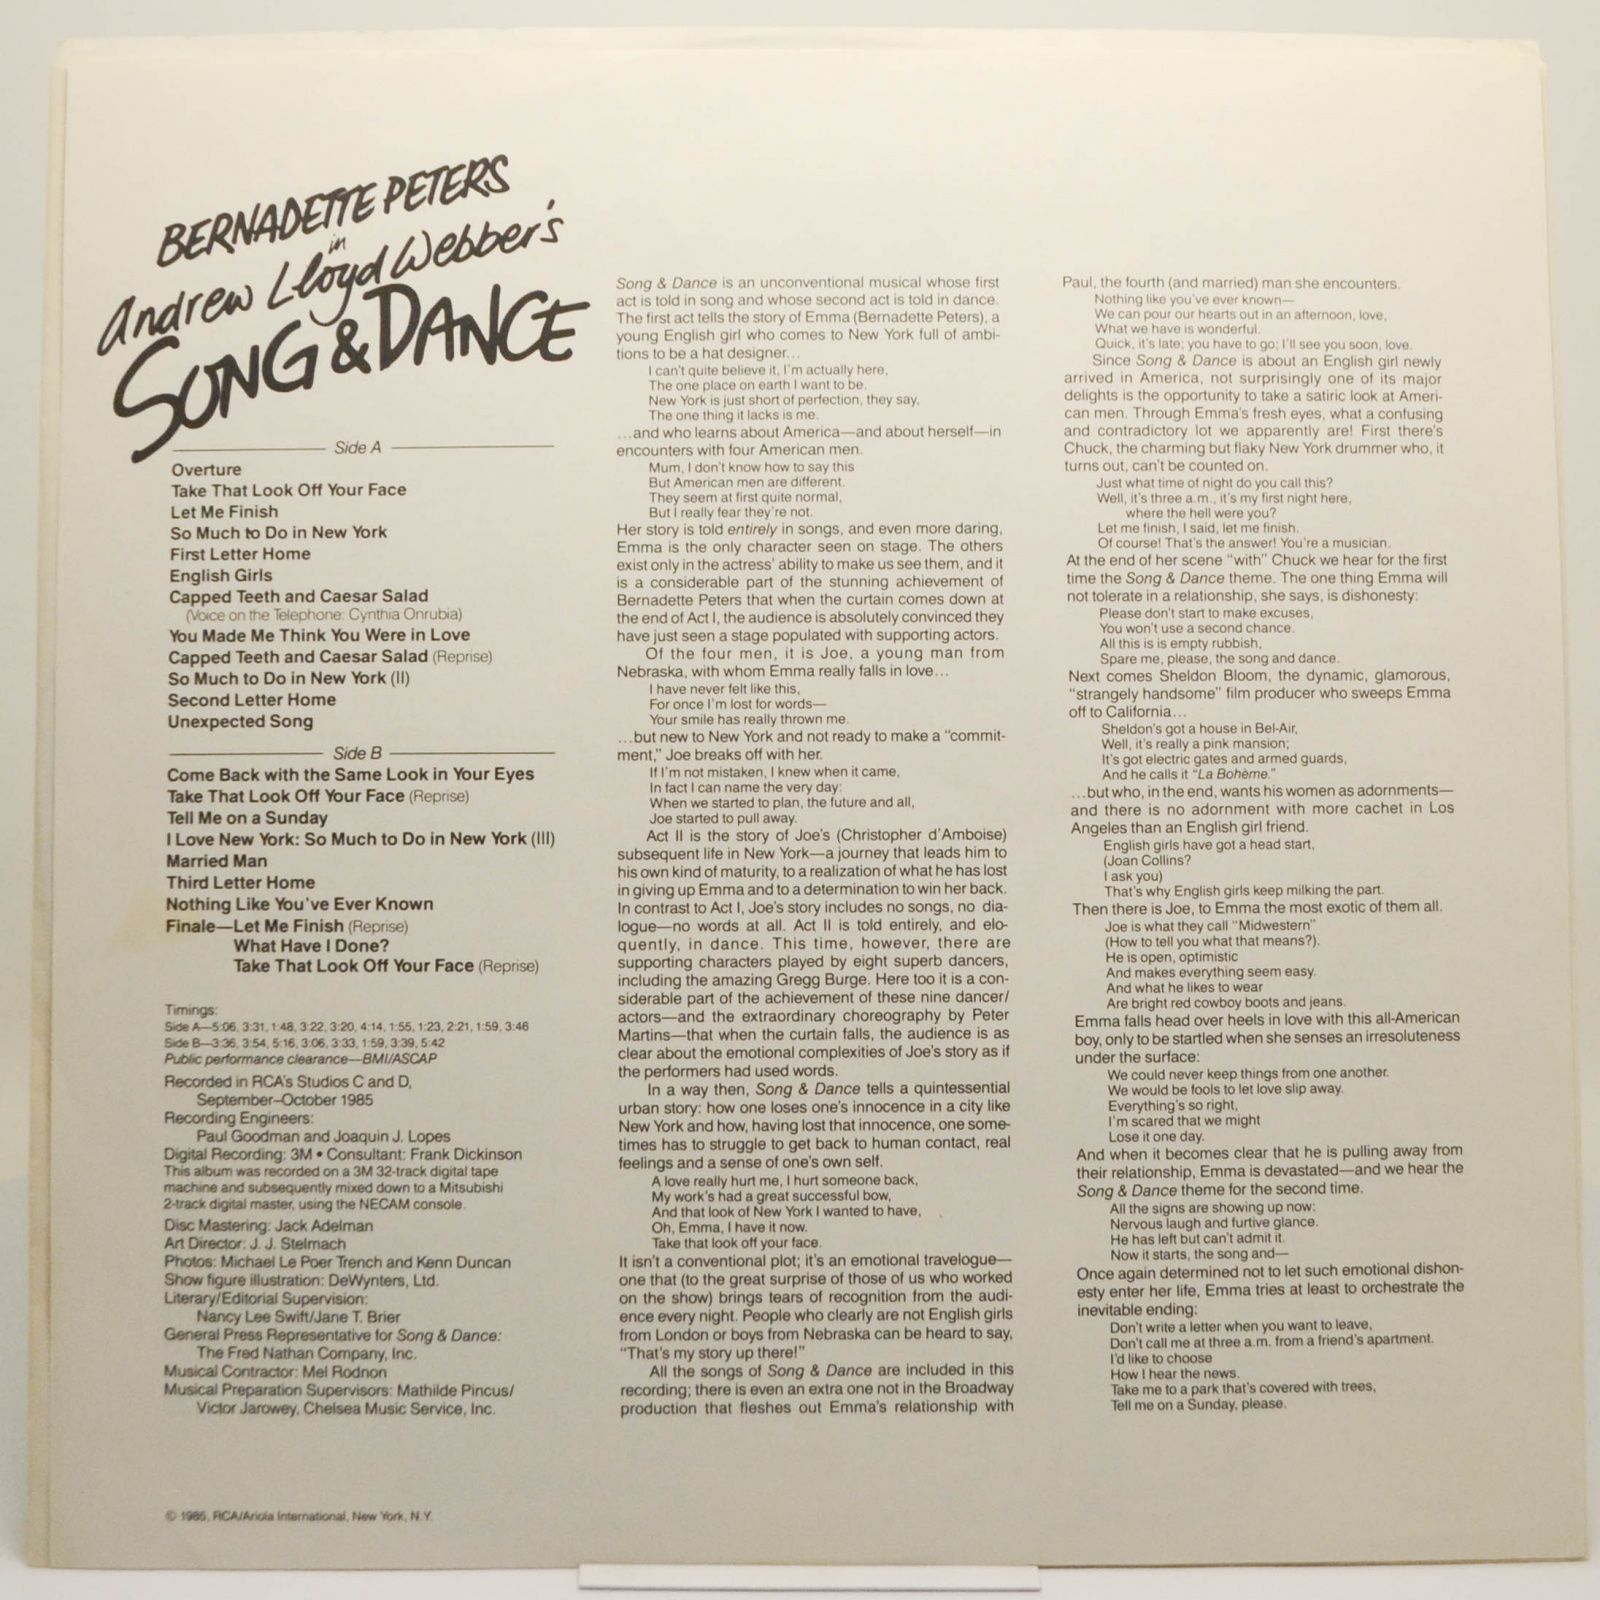 Bernadette Peters — Song & Dance, 1985